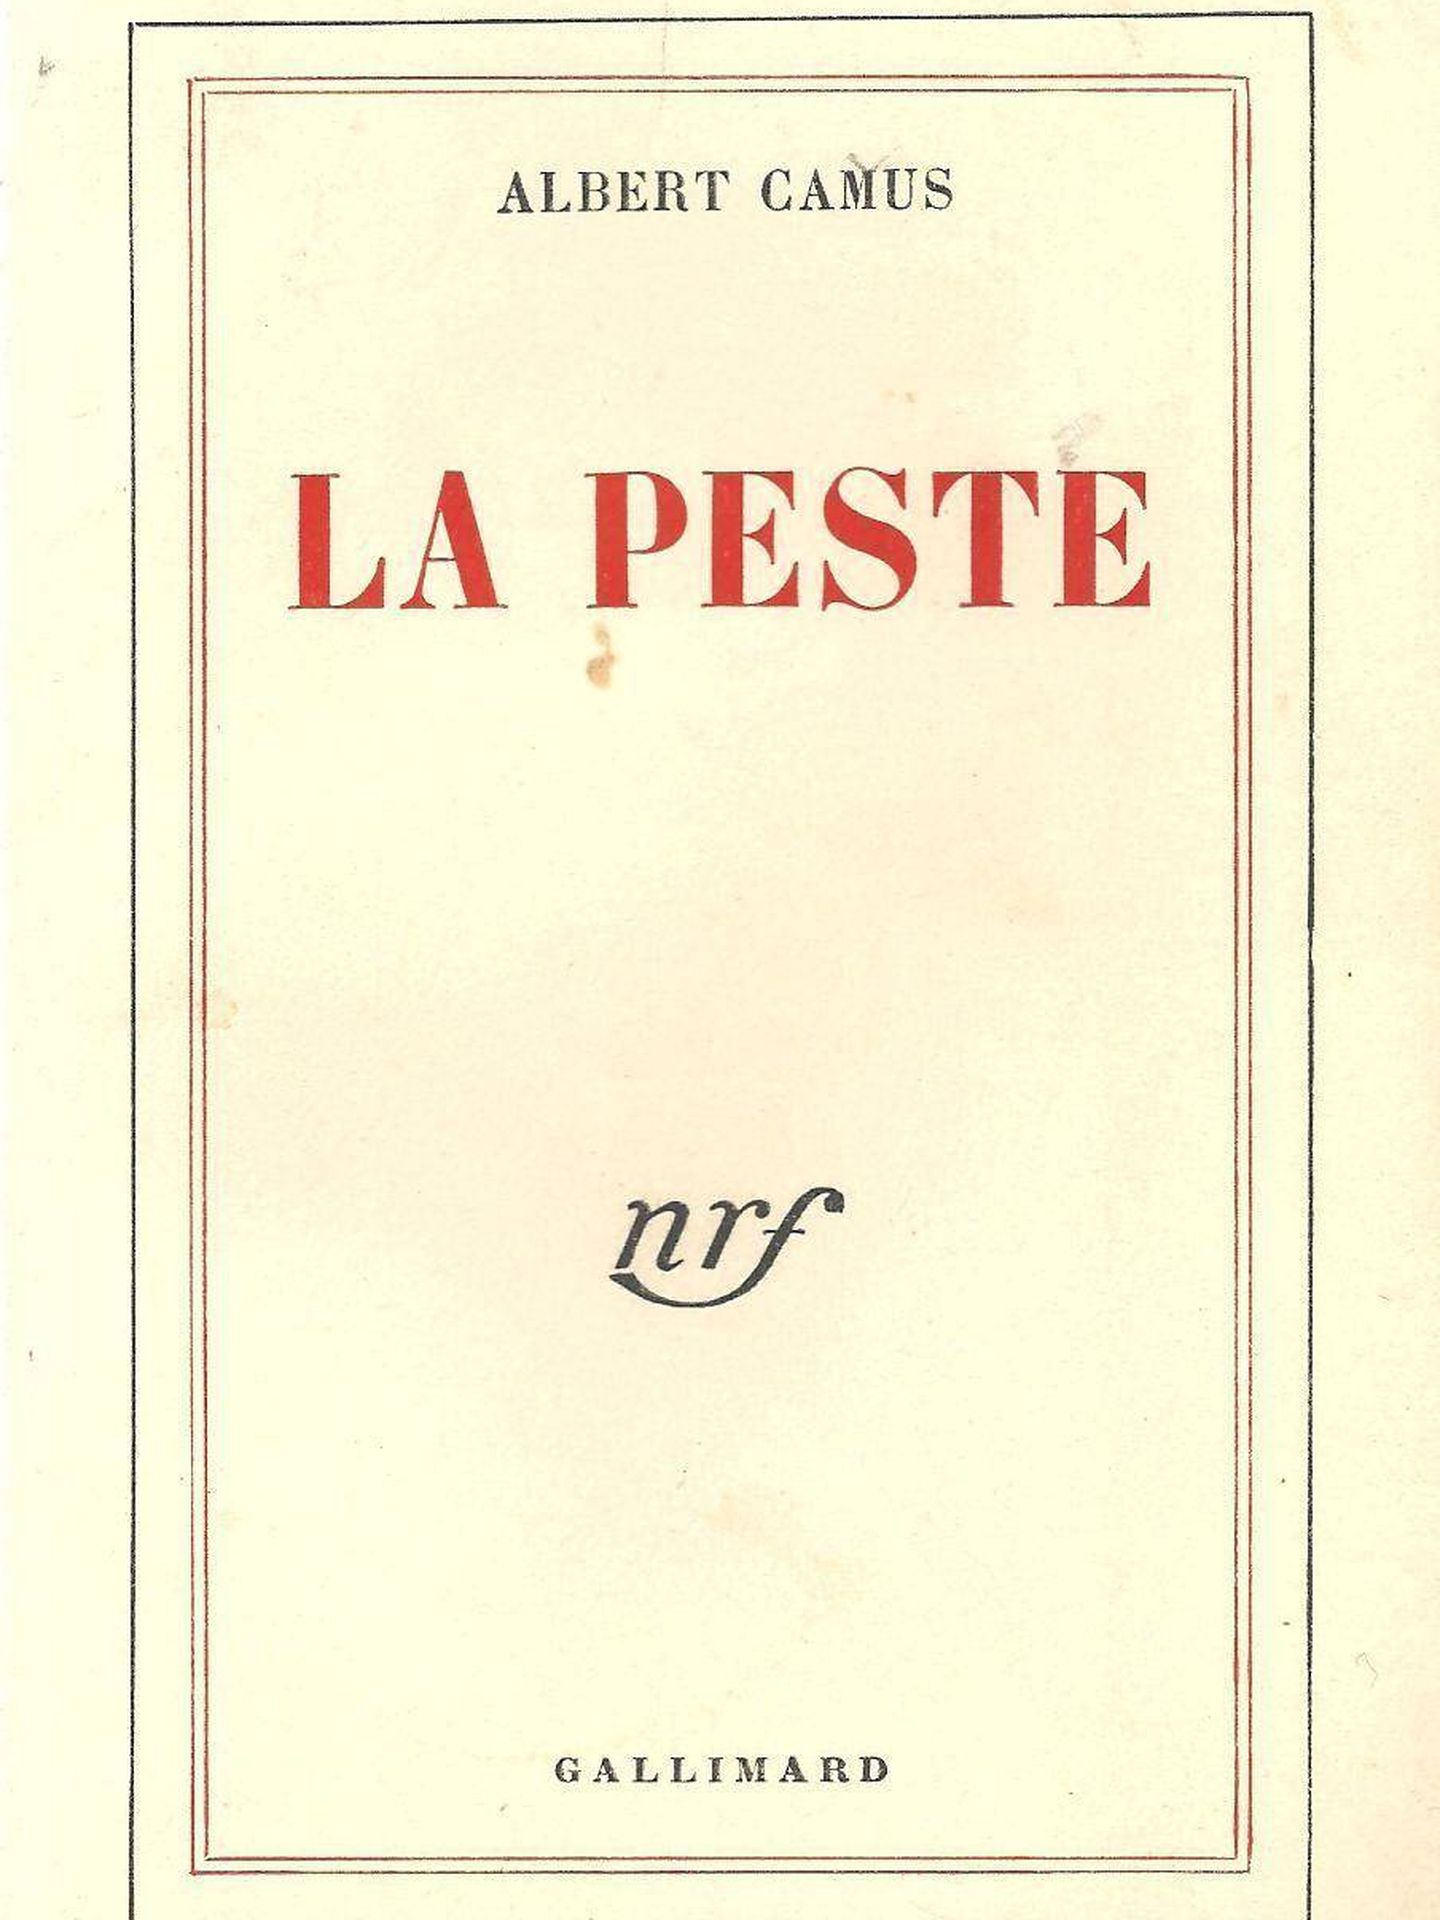 'La peste' (1947)